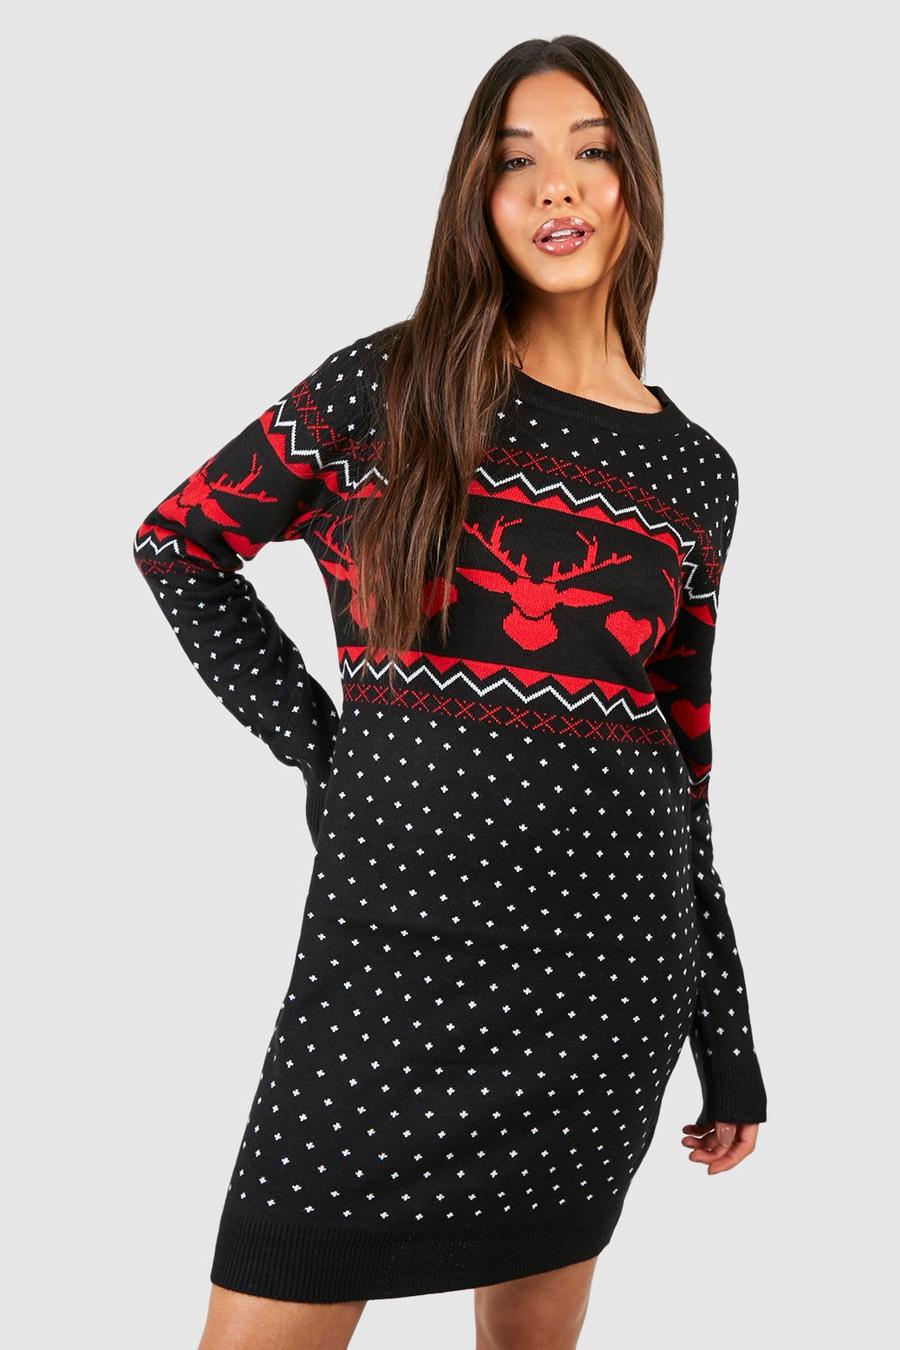 שחור שמלת סוודר לחג המולד עם דוגמת לבבות בסגנון פייר אייל